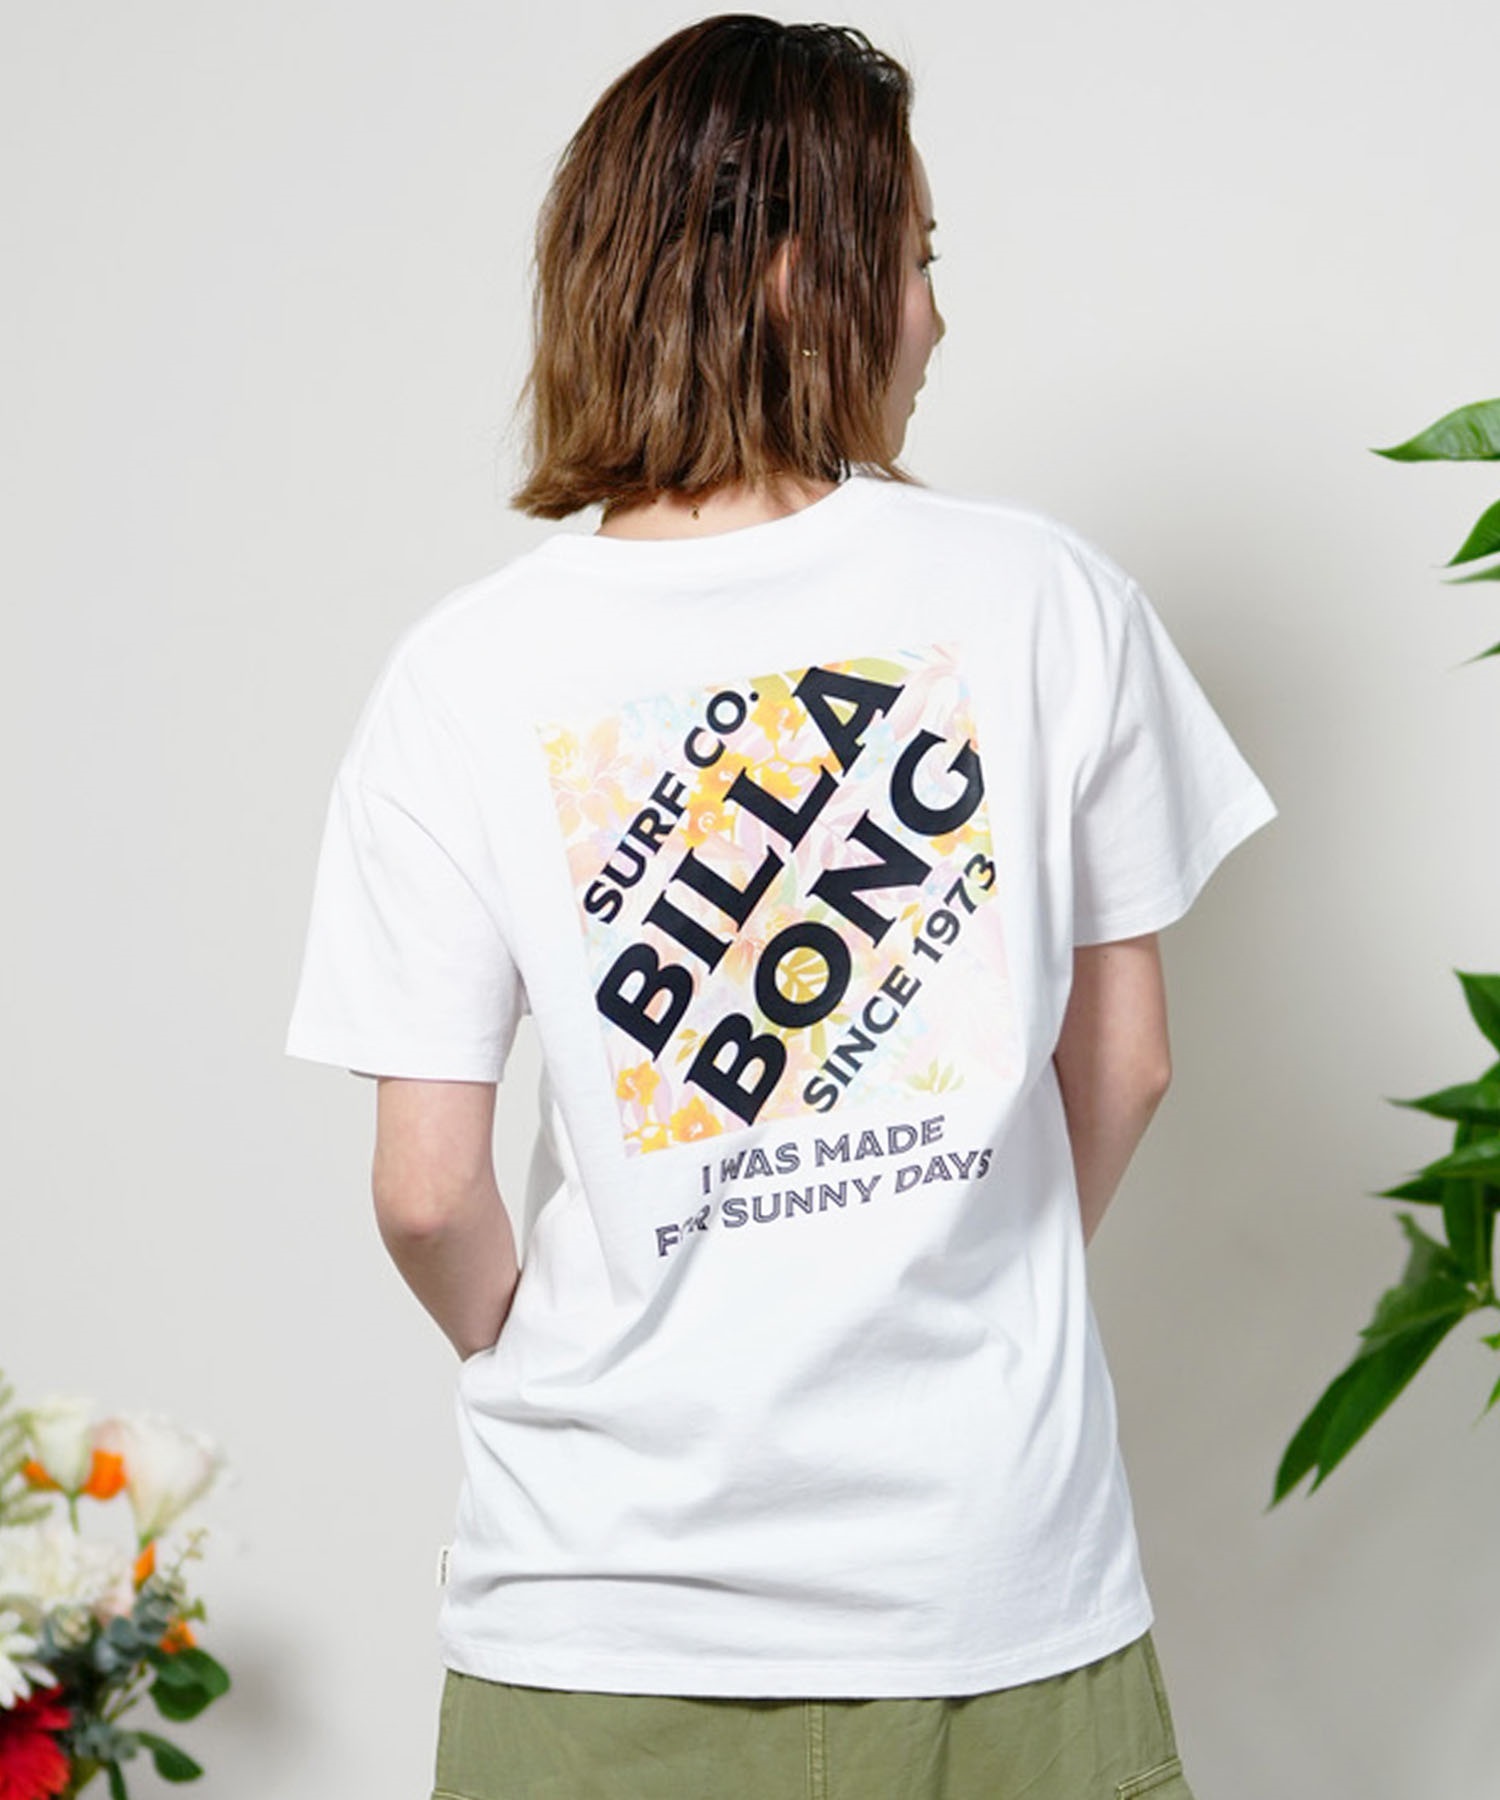 【クーポン対象】BILLABONG ビラボン SQUARE LOGO TEE レディース 半袖Tシャツ ブランドロゴ ボーイフィット BE013-201(WHT-M)